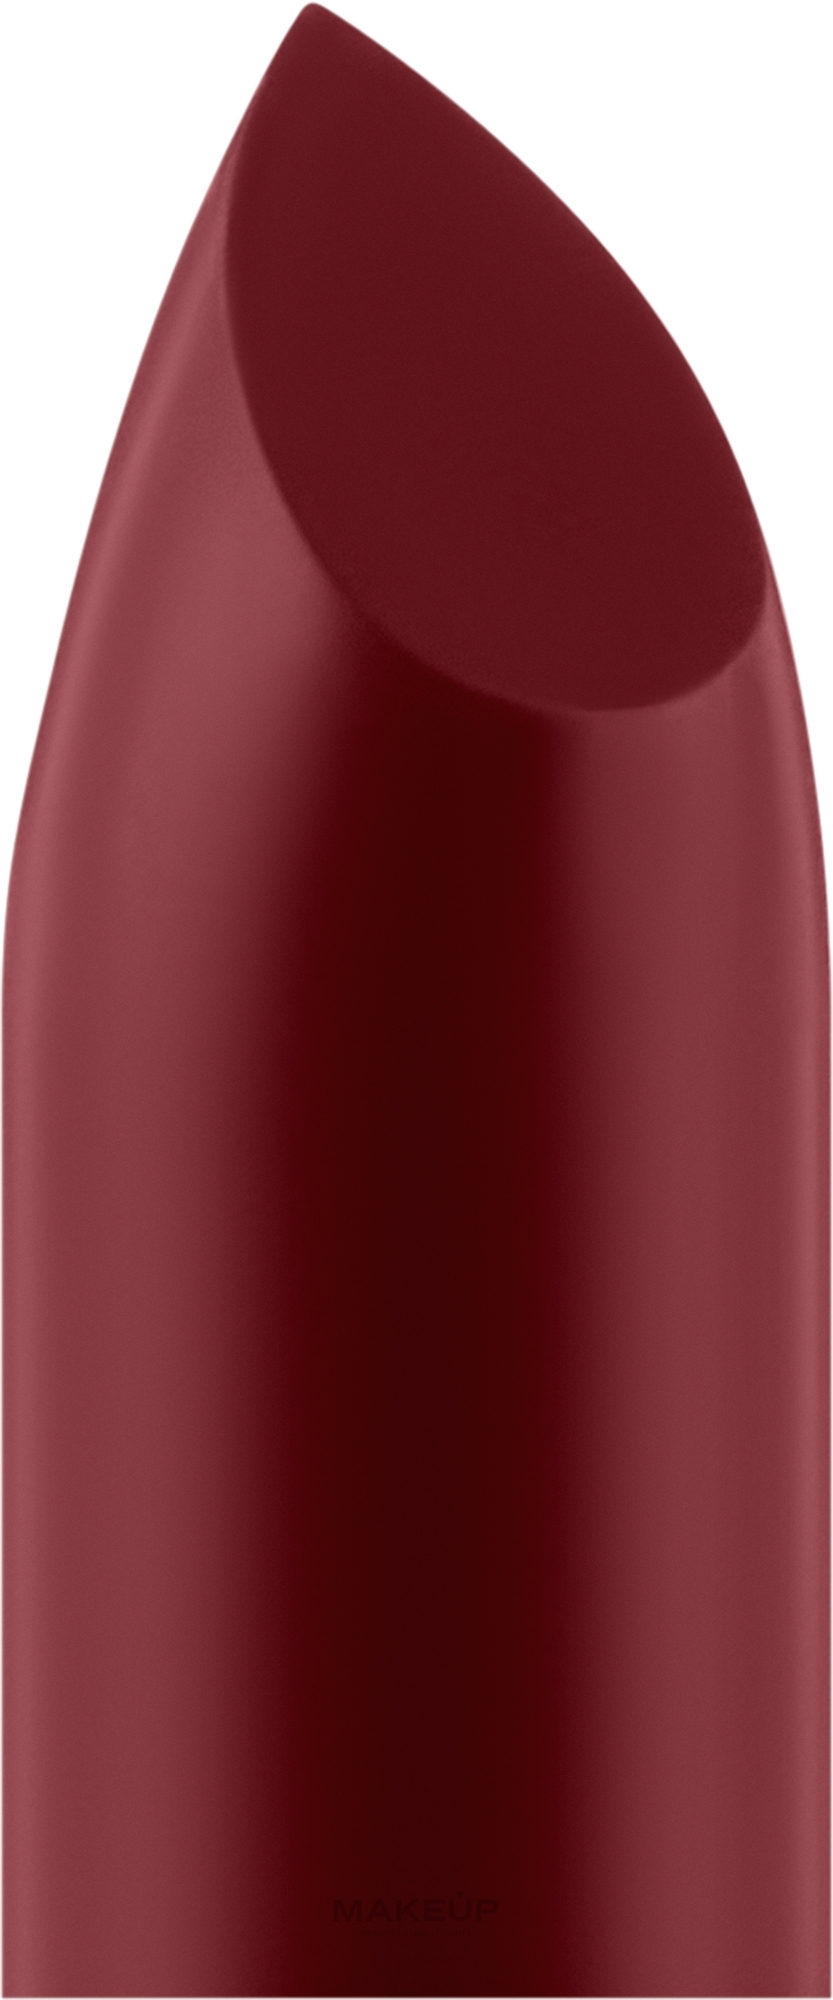 Szminka do ust - PuroBio Cosmetics Semi-Matte Lipstick Refill (jednostka zastępcza) — Zdjęcie 103